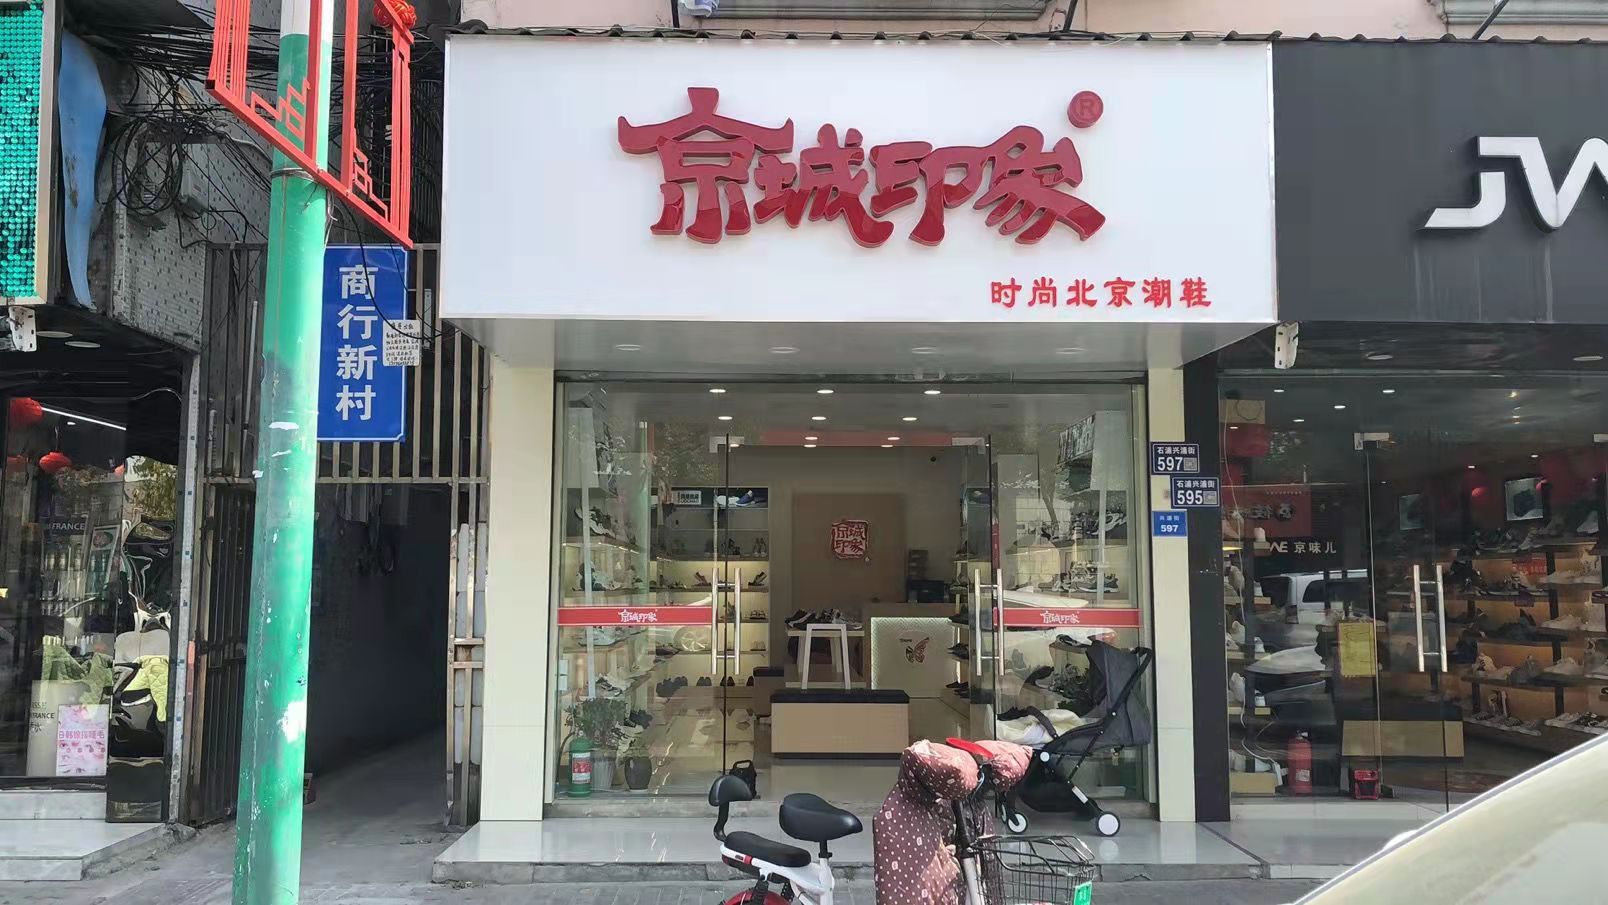 贺：京城印象老北京布鞋加盟店江苏孟老板盛大开业！